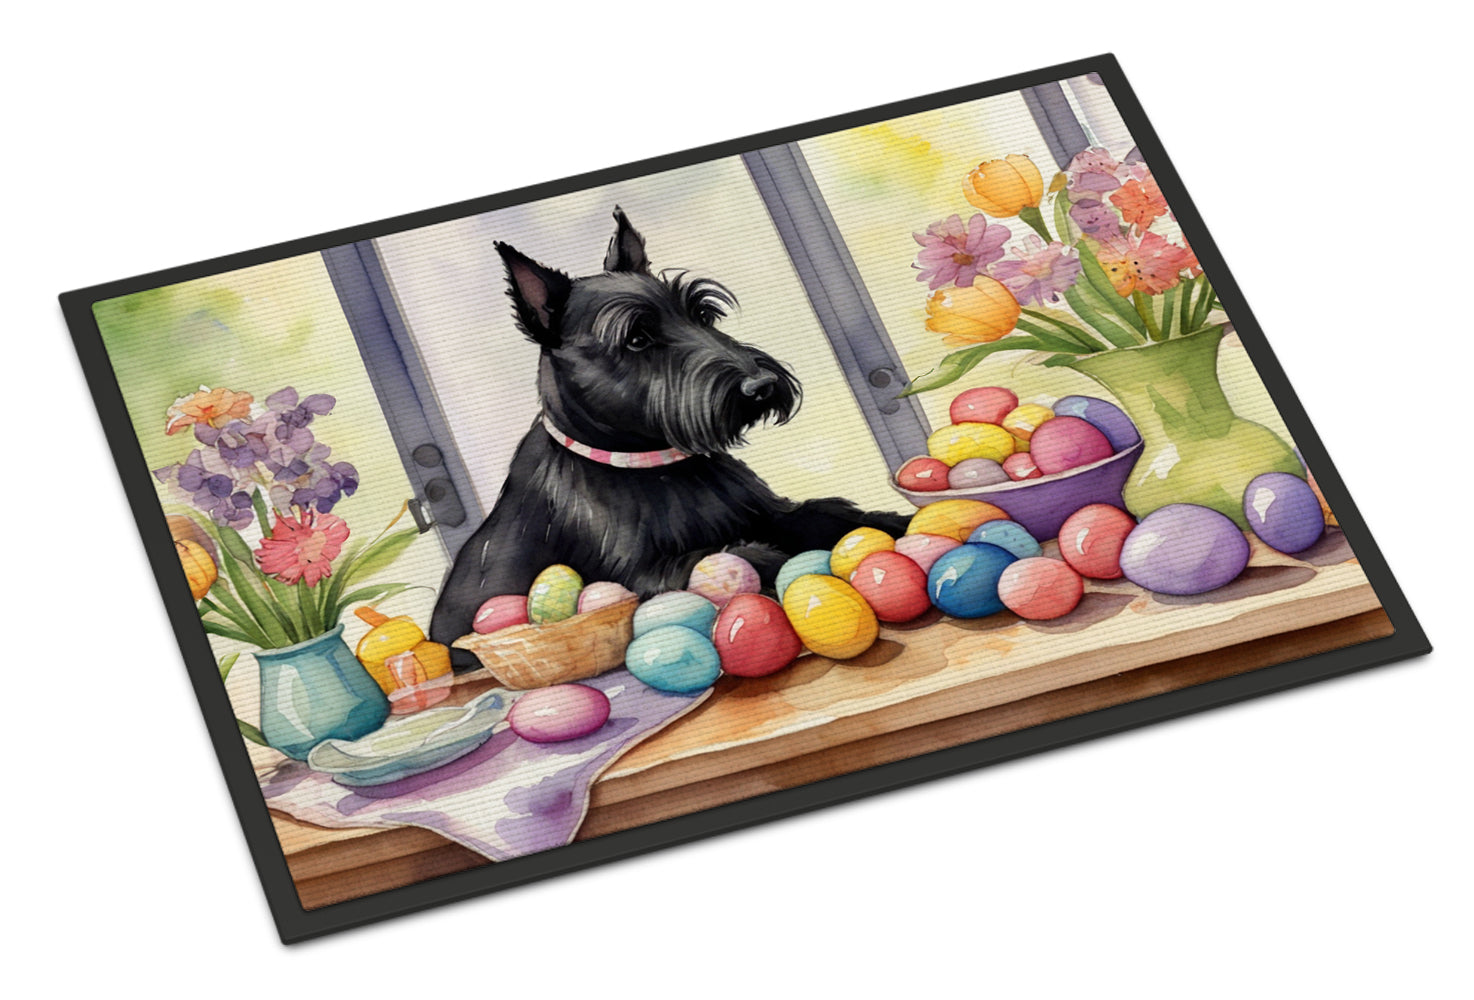 Buy this Decorating Easter Scottish Terrier Doormat